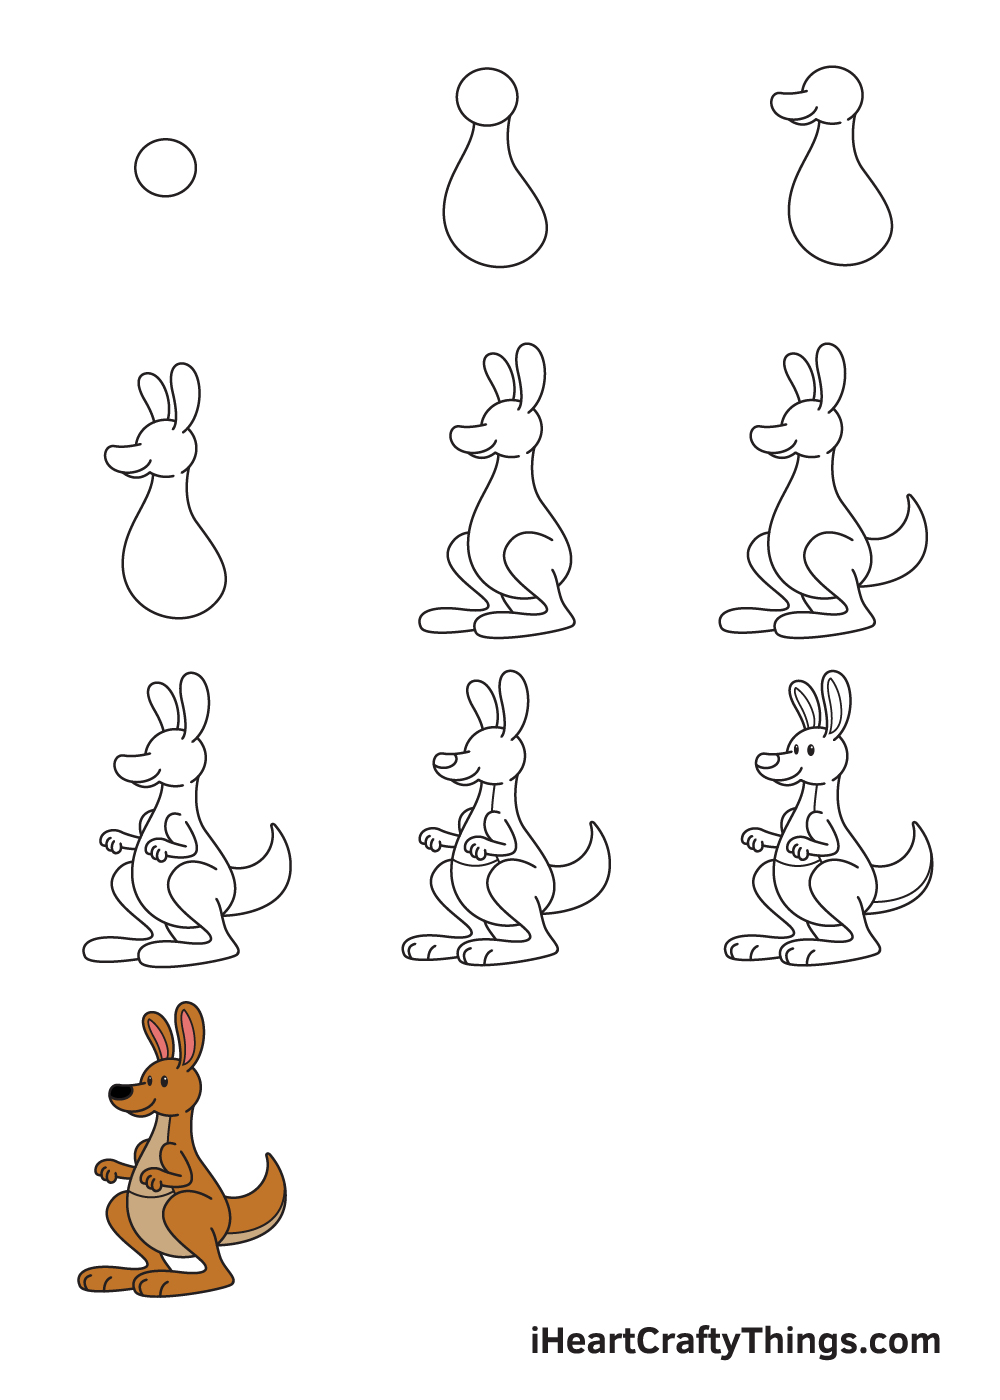 Drawing Kangaroo in 10 Easy Steps